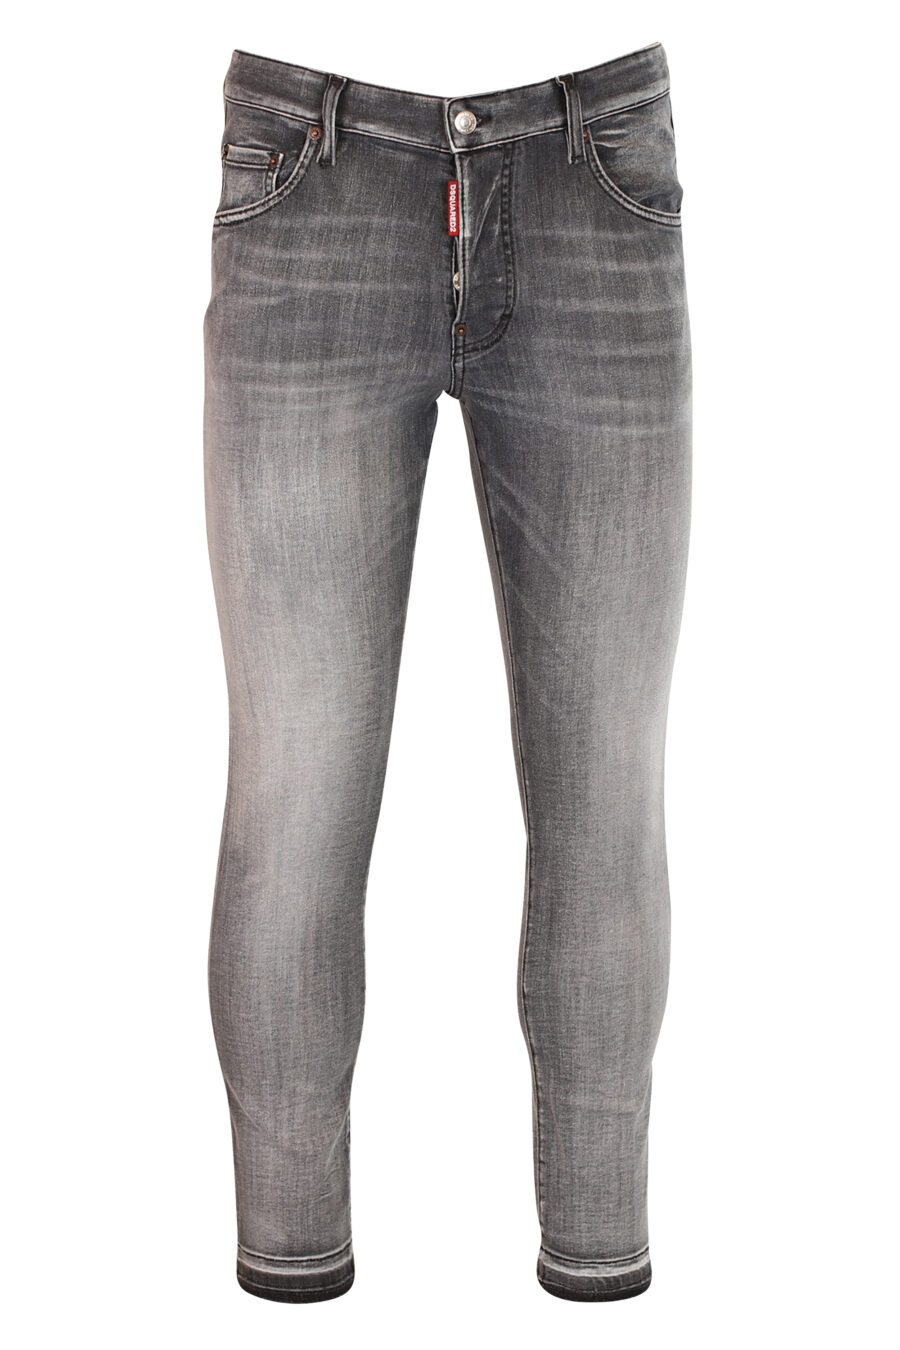 Pantalon patine en jean gris effiloché - 8054148004644